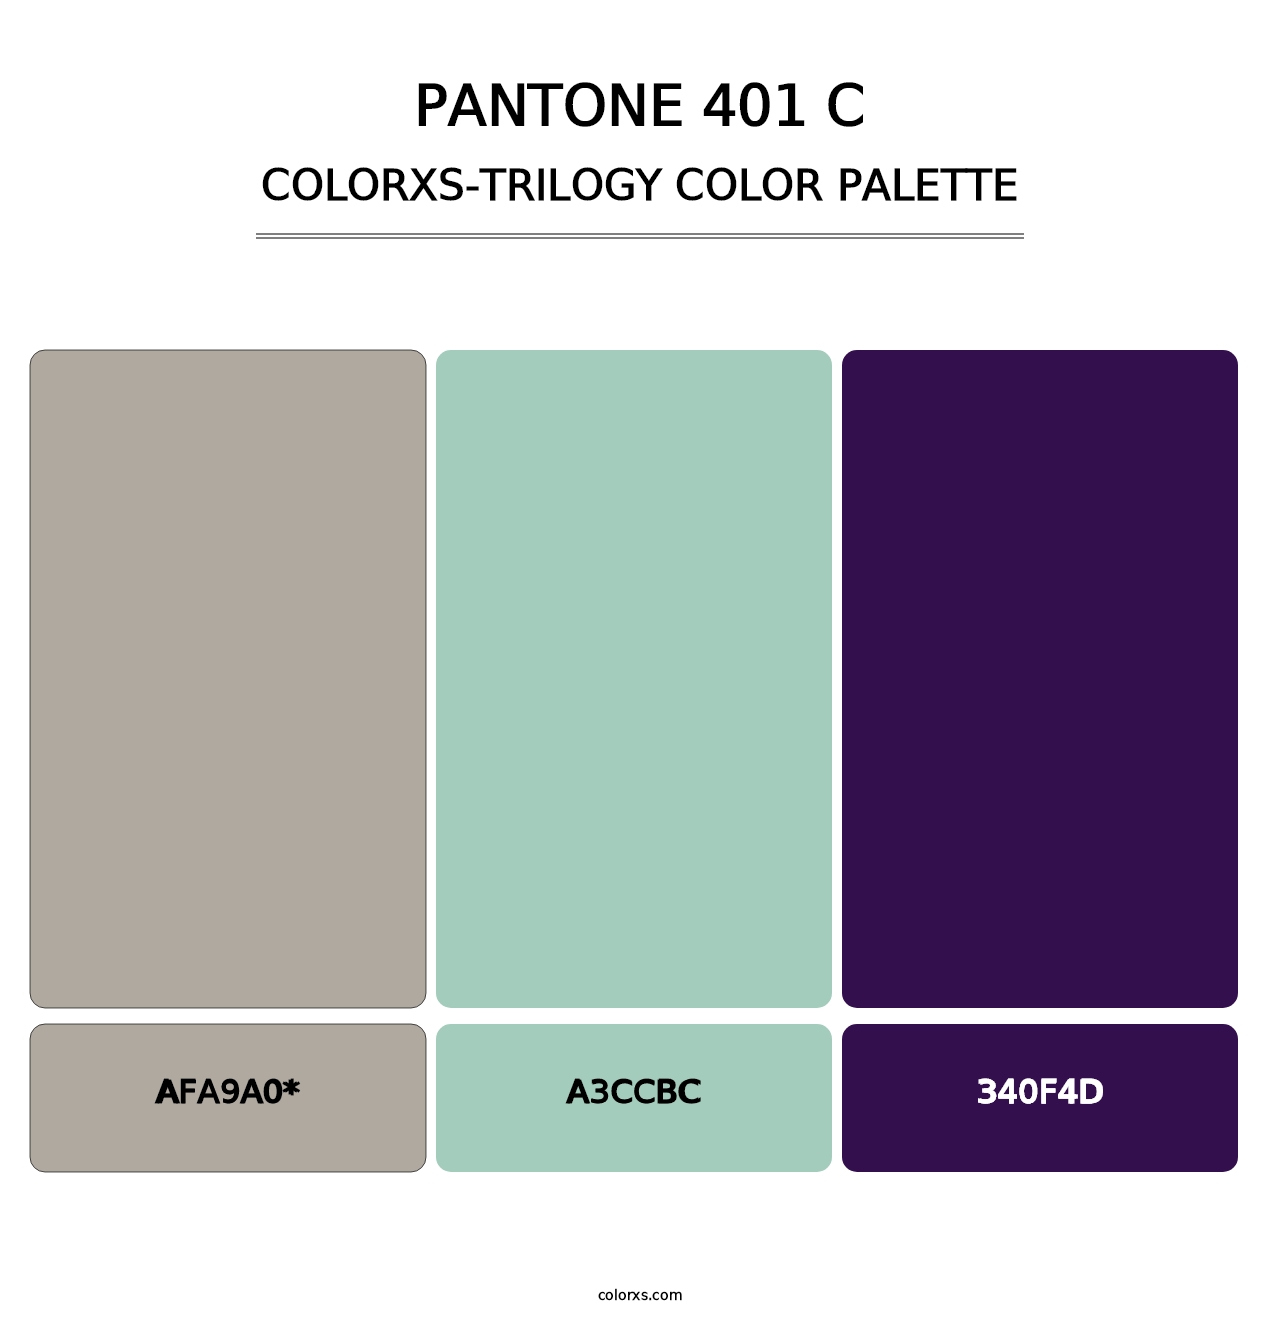 PANTONE 401 C - Colorxs Trilogy Palette